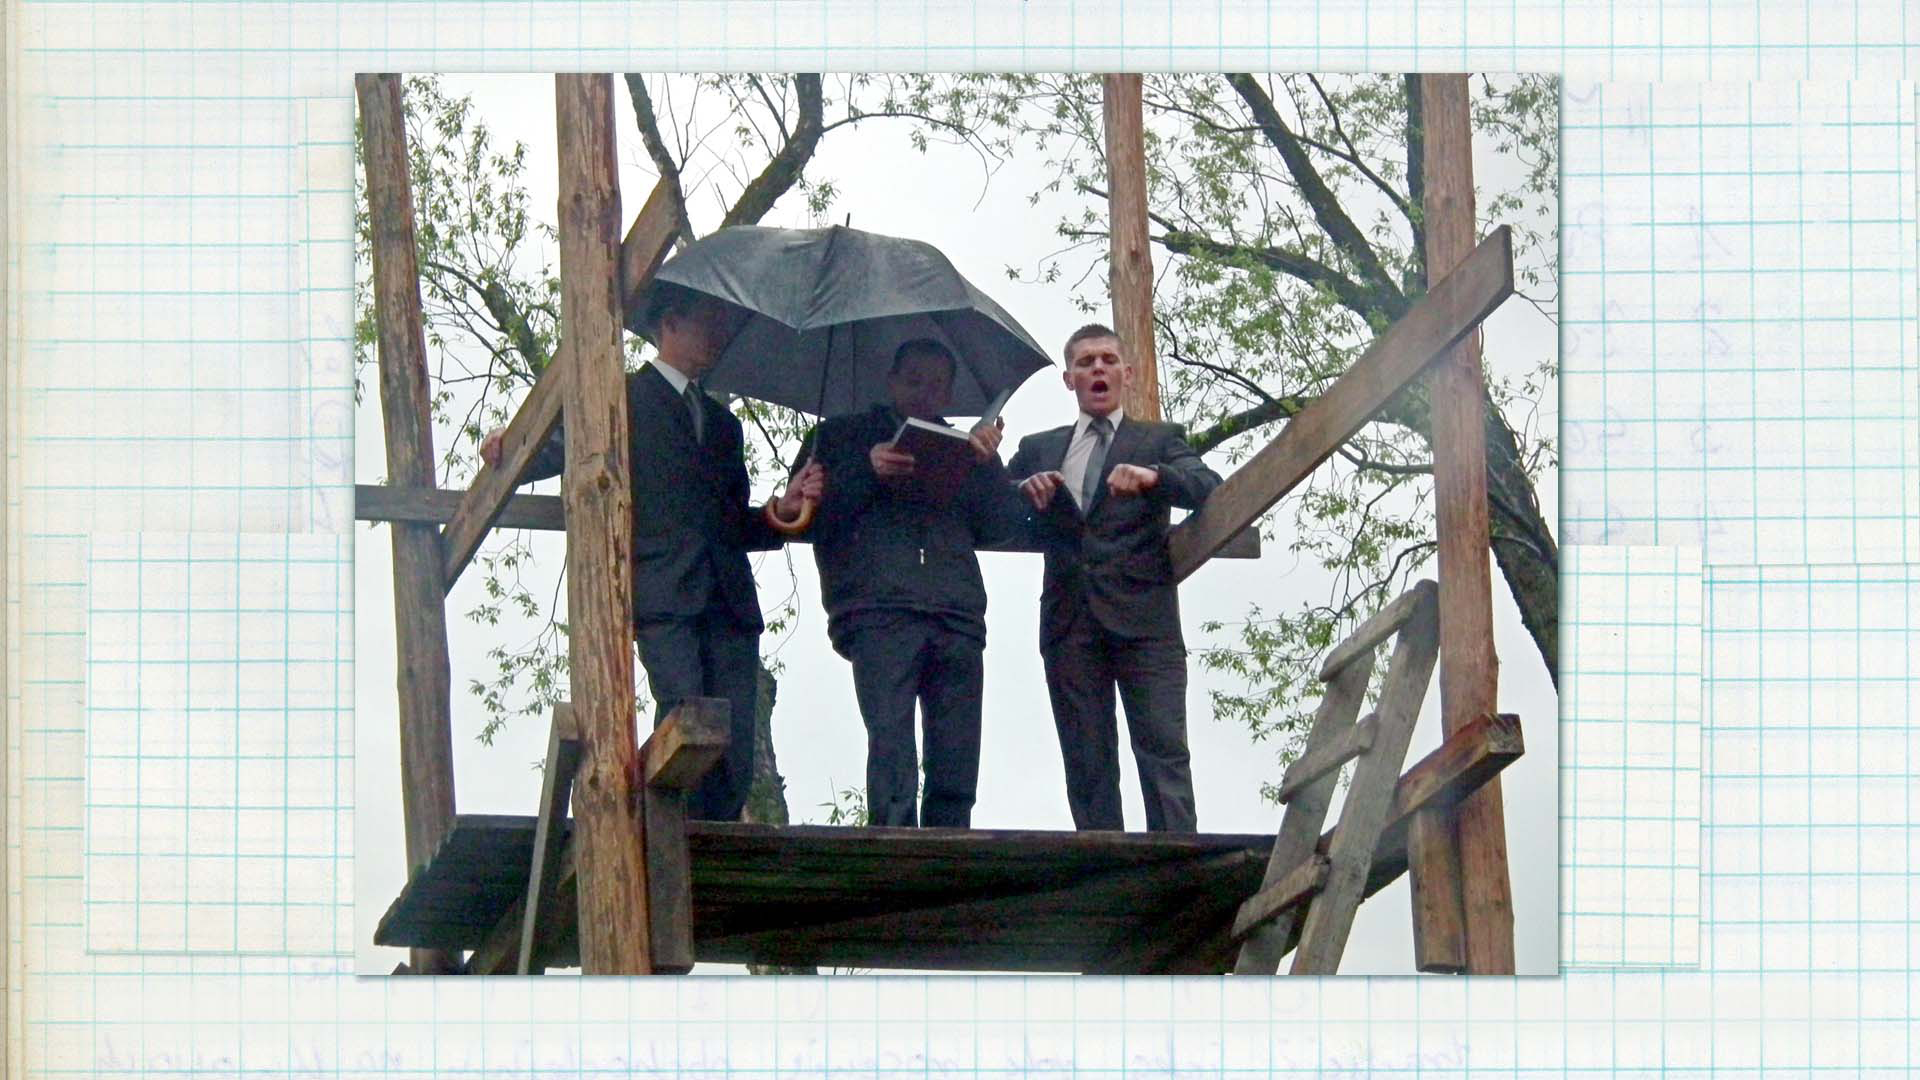 Wygłaszanie przywołówek, Niedziela Wielkanocna, 2014, Paula Kopeć Zdjęcie kolorowe. Trzech młodych mężczyzn, w eleganckich ubraniach stoi na górze trybuny. Jeden z nich najprawdopodobniej krzyczy, drugi trzyma w swoich dłoniach czerwoną książkę, trzeci trzyma rozłożony parasol.